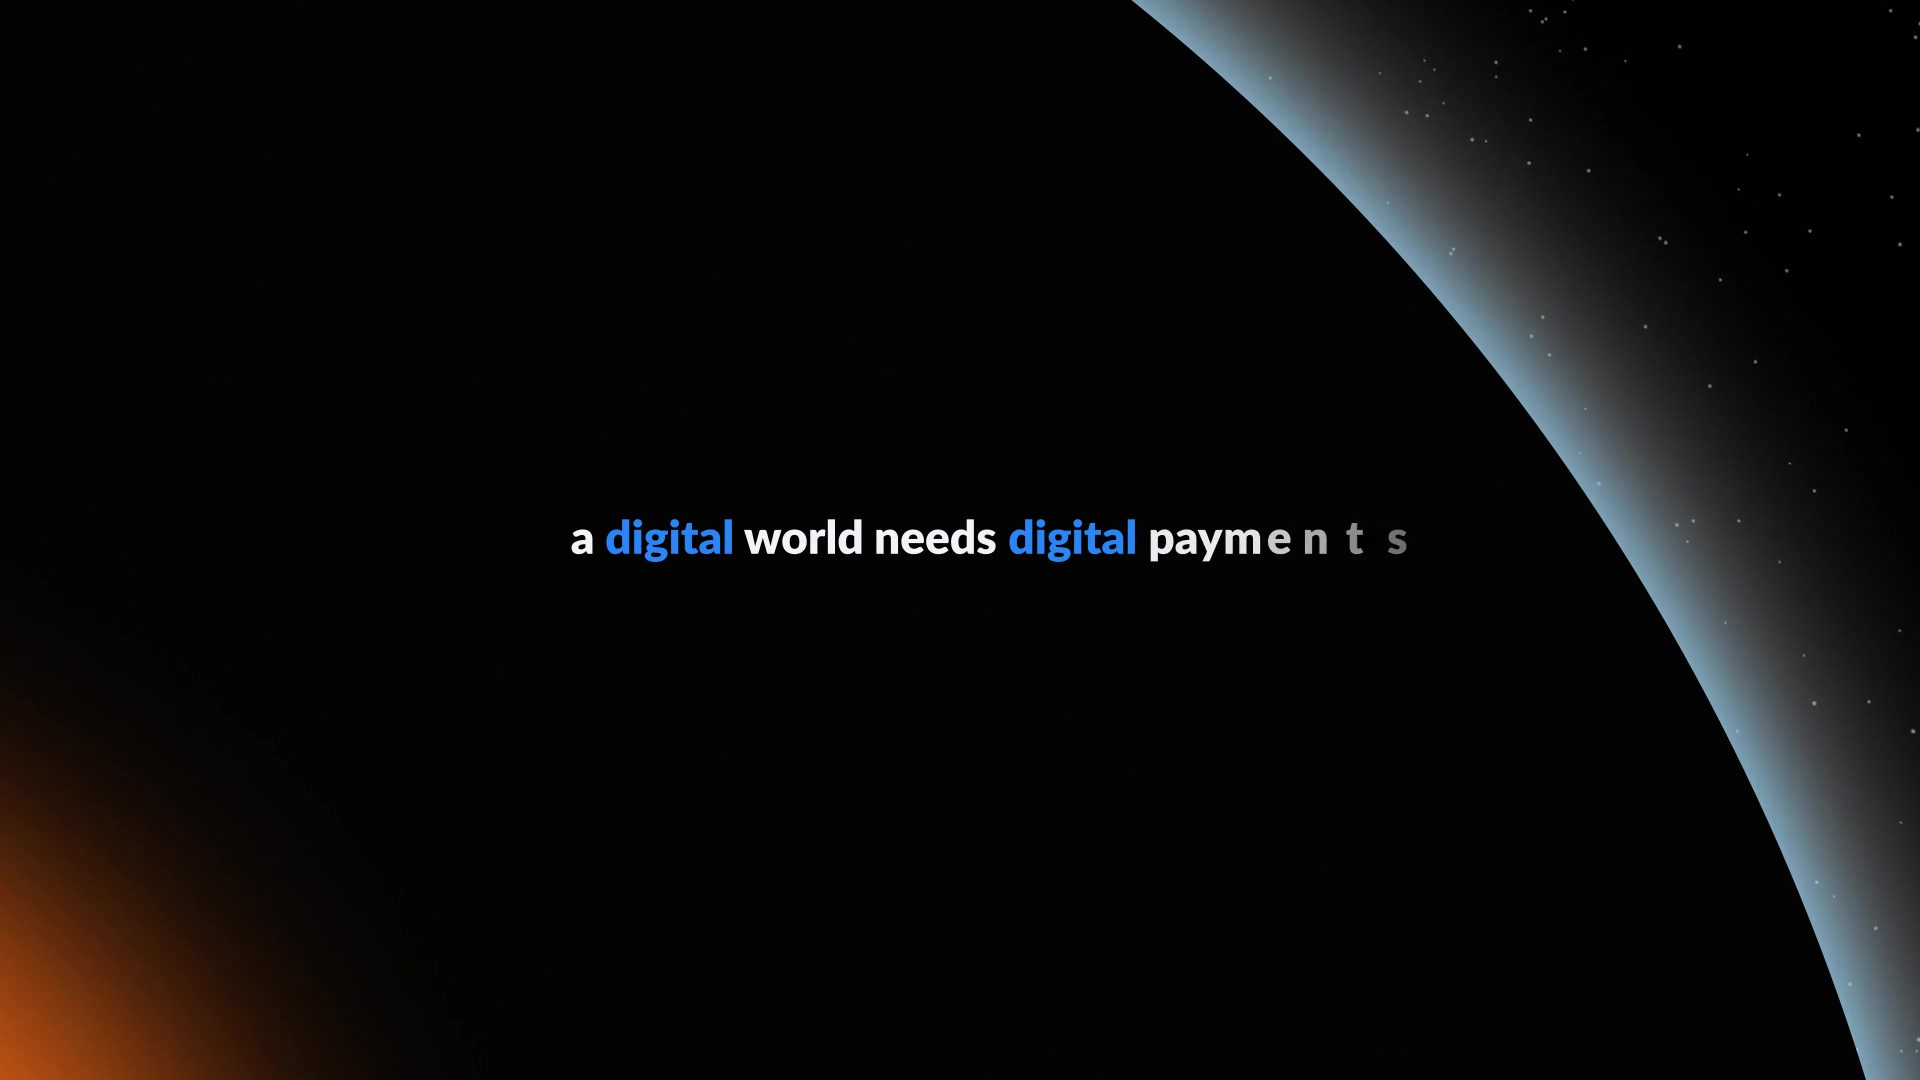 A digital world needs digital payments